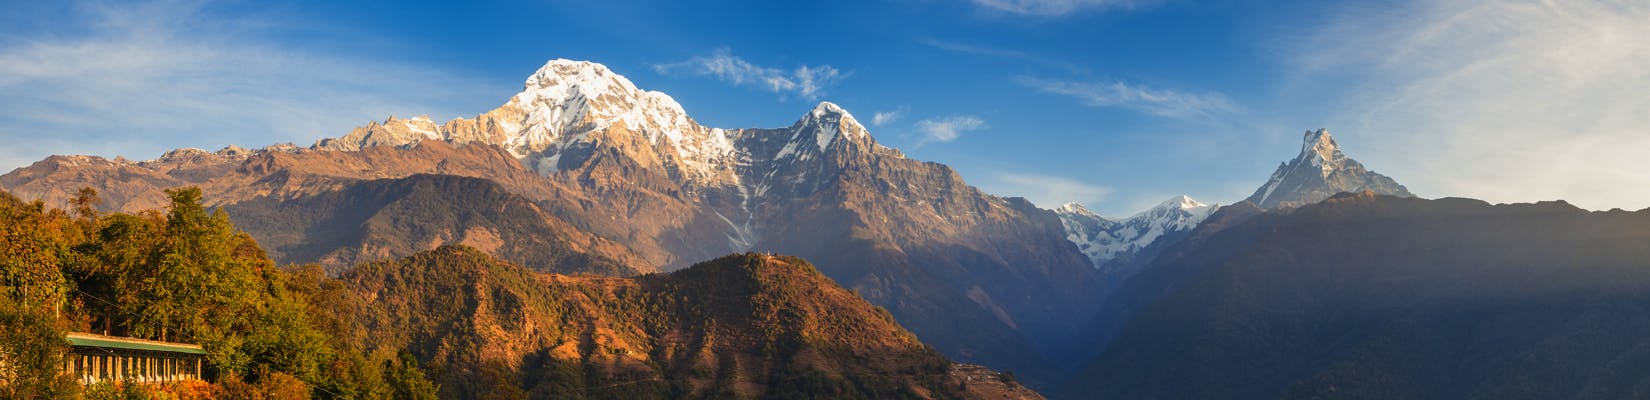 Adventurous Activities To Do In Nepal